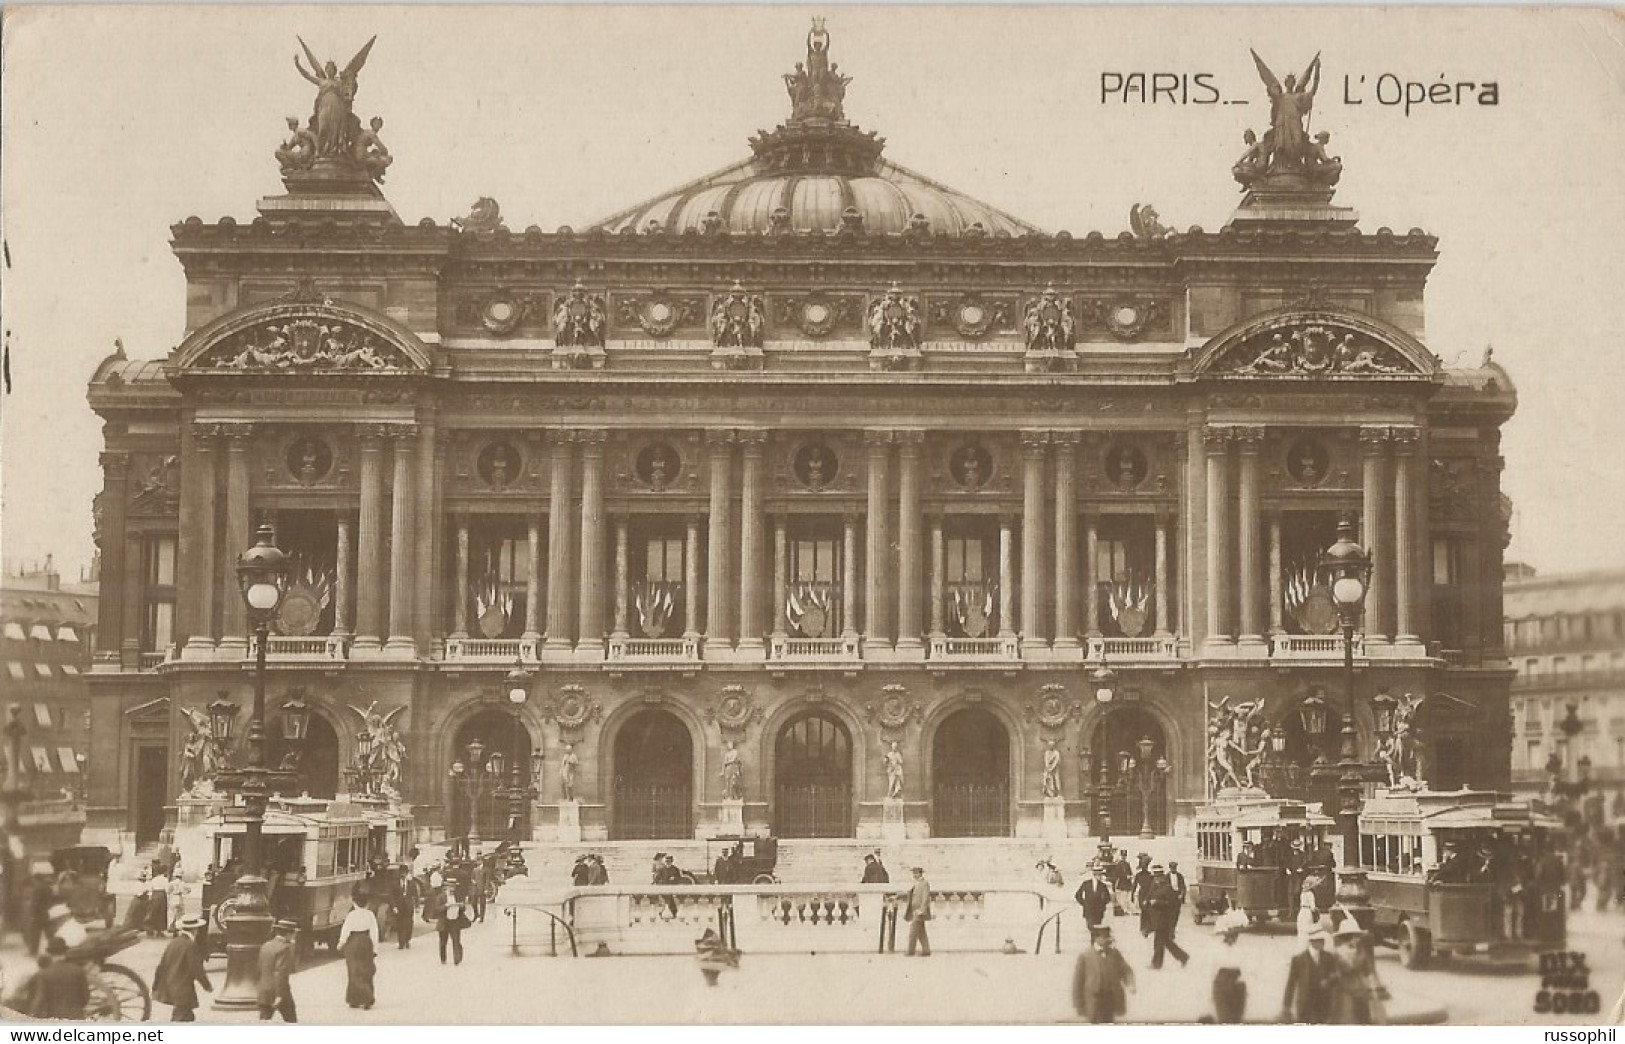 FRANCE - FLIER DEPARTURE PMK "PARIS XVII JEUX OLYMPIQUES" ON FRANKED PC (VIEW OF PARIS) TO DENMARK - 1924 - Estate 1924: Paris